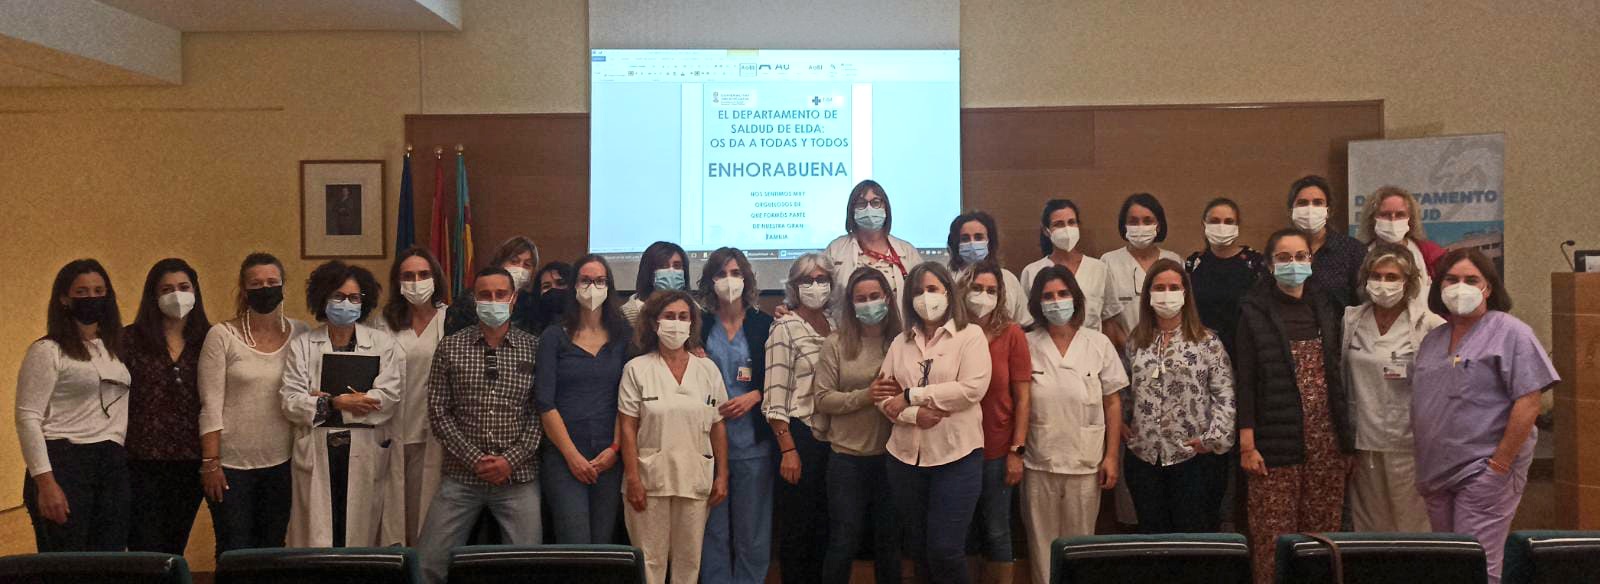 Acto de adjudicación de las plazas nuevas de enfermería en el Hospital de Elda